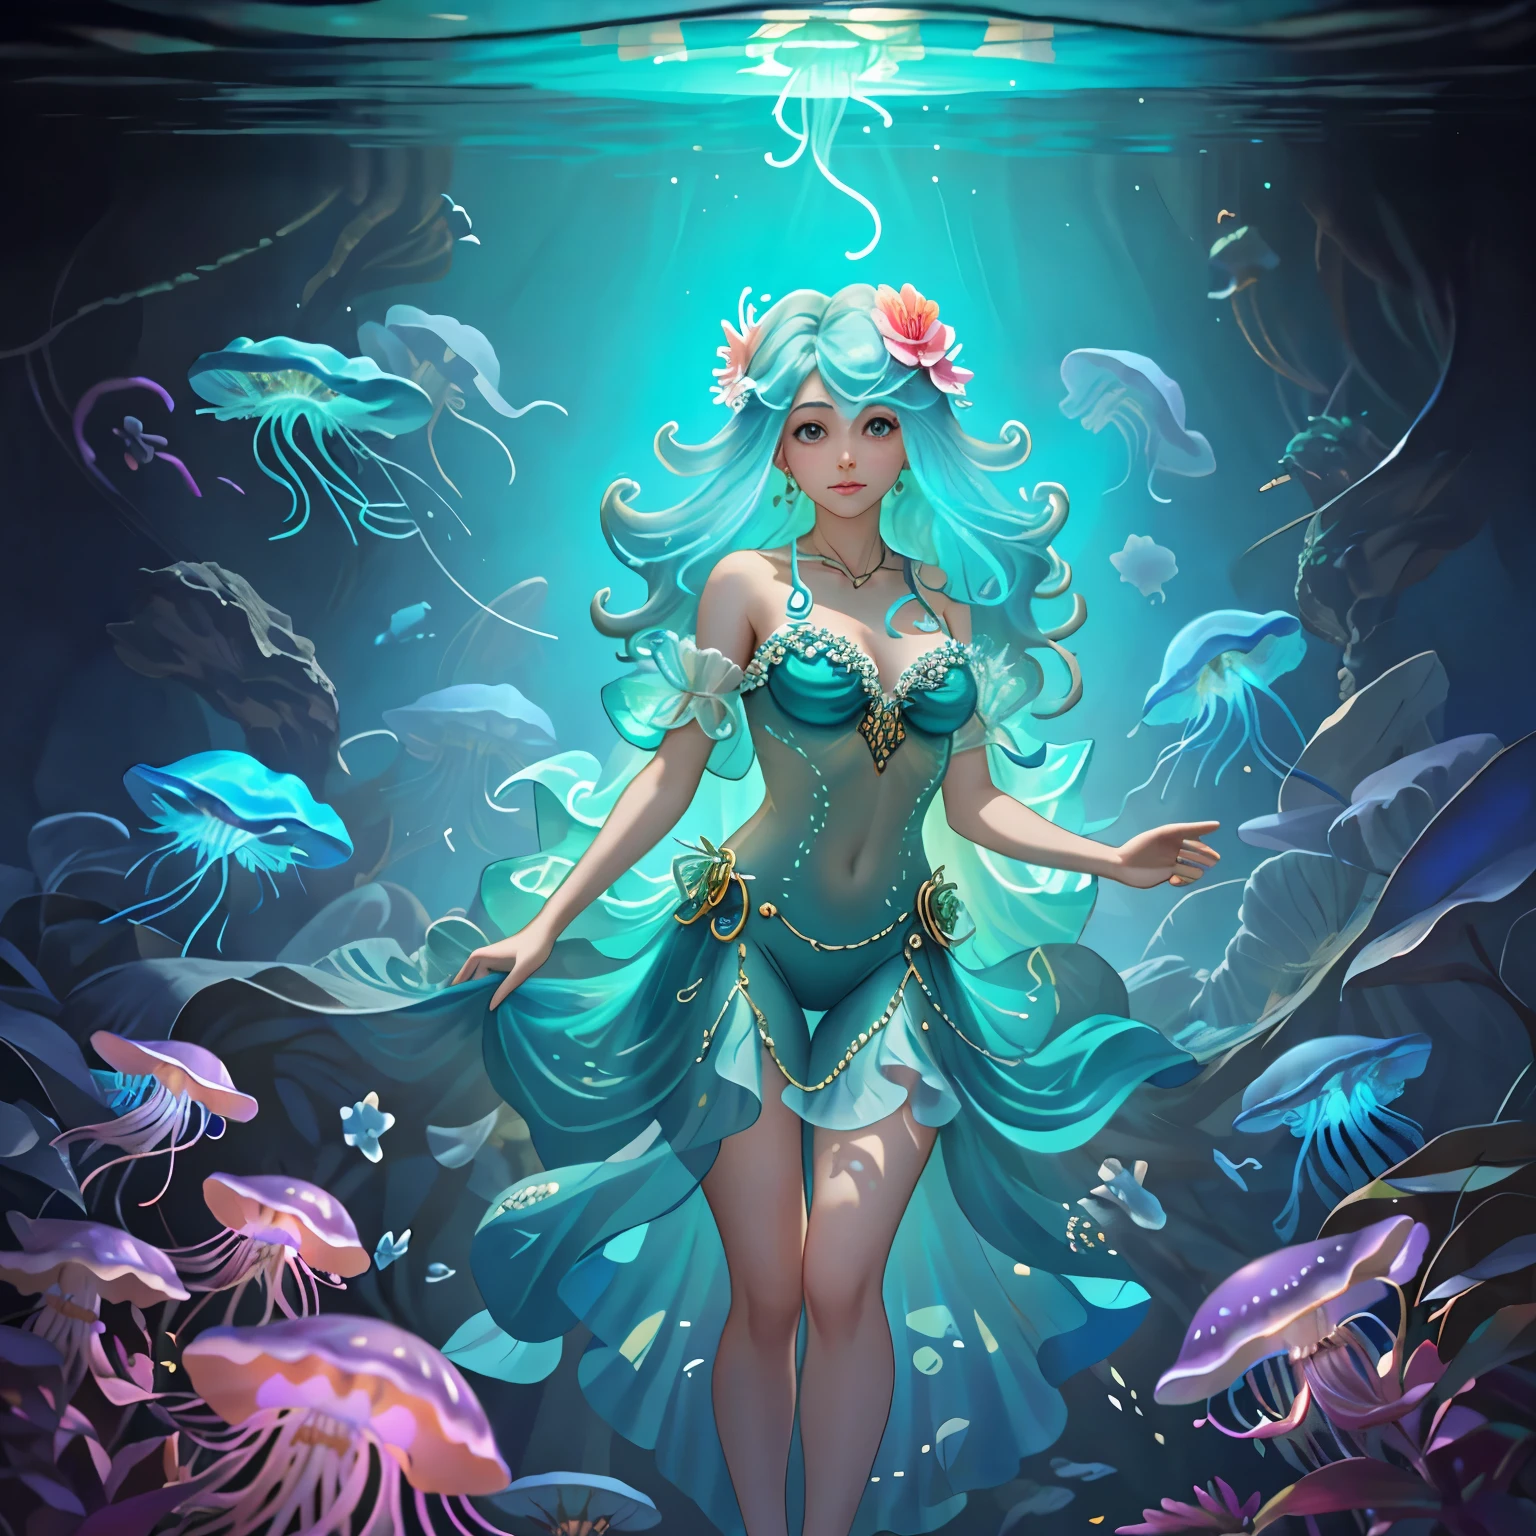 медузы плавают в воде, а на ней женщина, киберпанк медуза, медуза феникс, жрица медузы, неоновая медуза, Биолюминесцентное существо, deep морское создание, бог медузы, светящаяся медуза, морское создание, Кристофер Баласкас, водное существо, 🌺 cgsociety, Майк Винкельманн, translucent светящаяся медуза